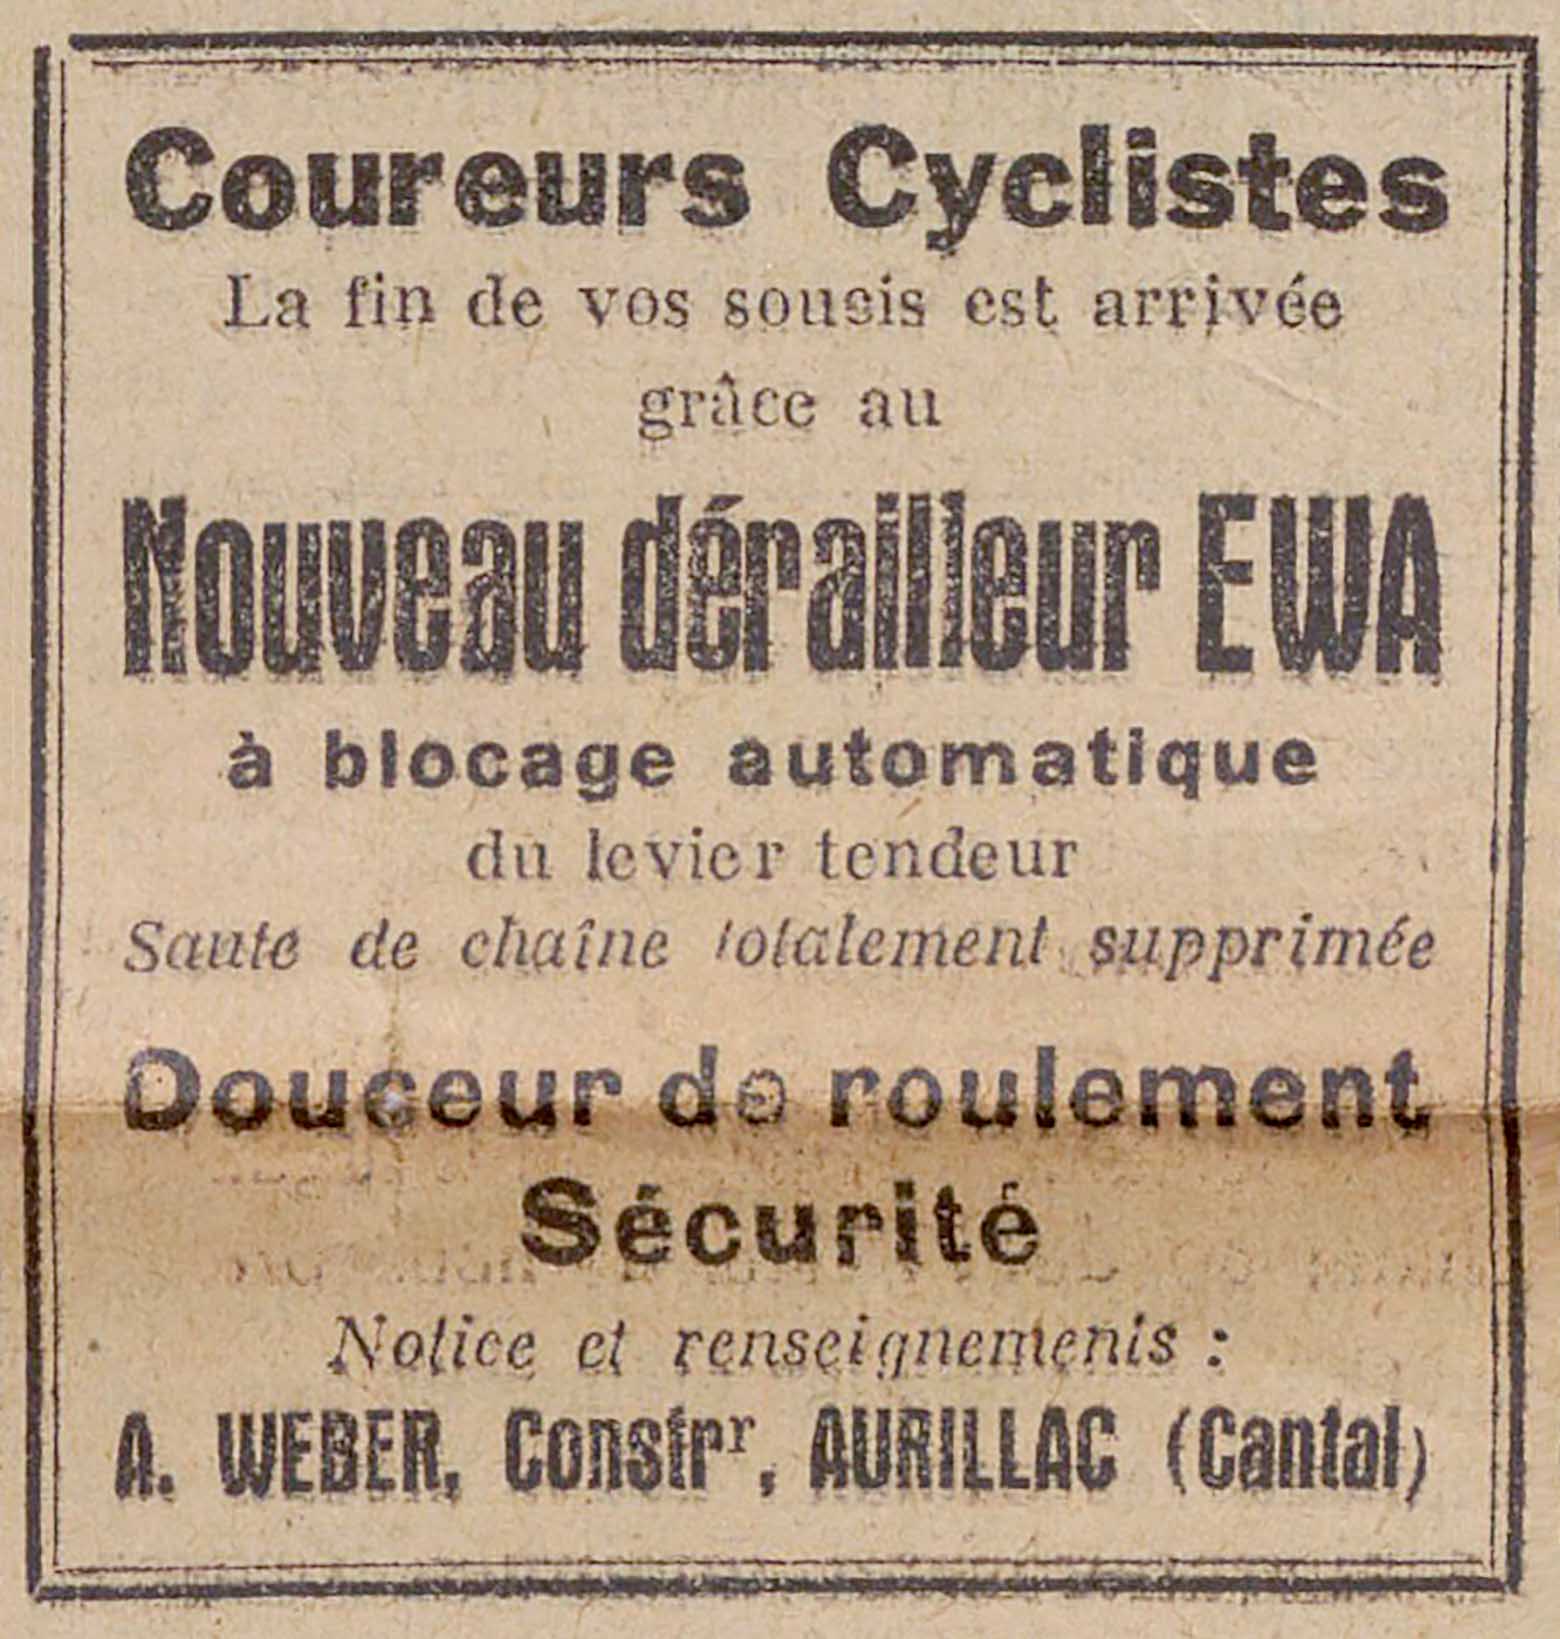 Le Velo Boxe 20th November 1934 - EWA advert main image